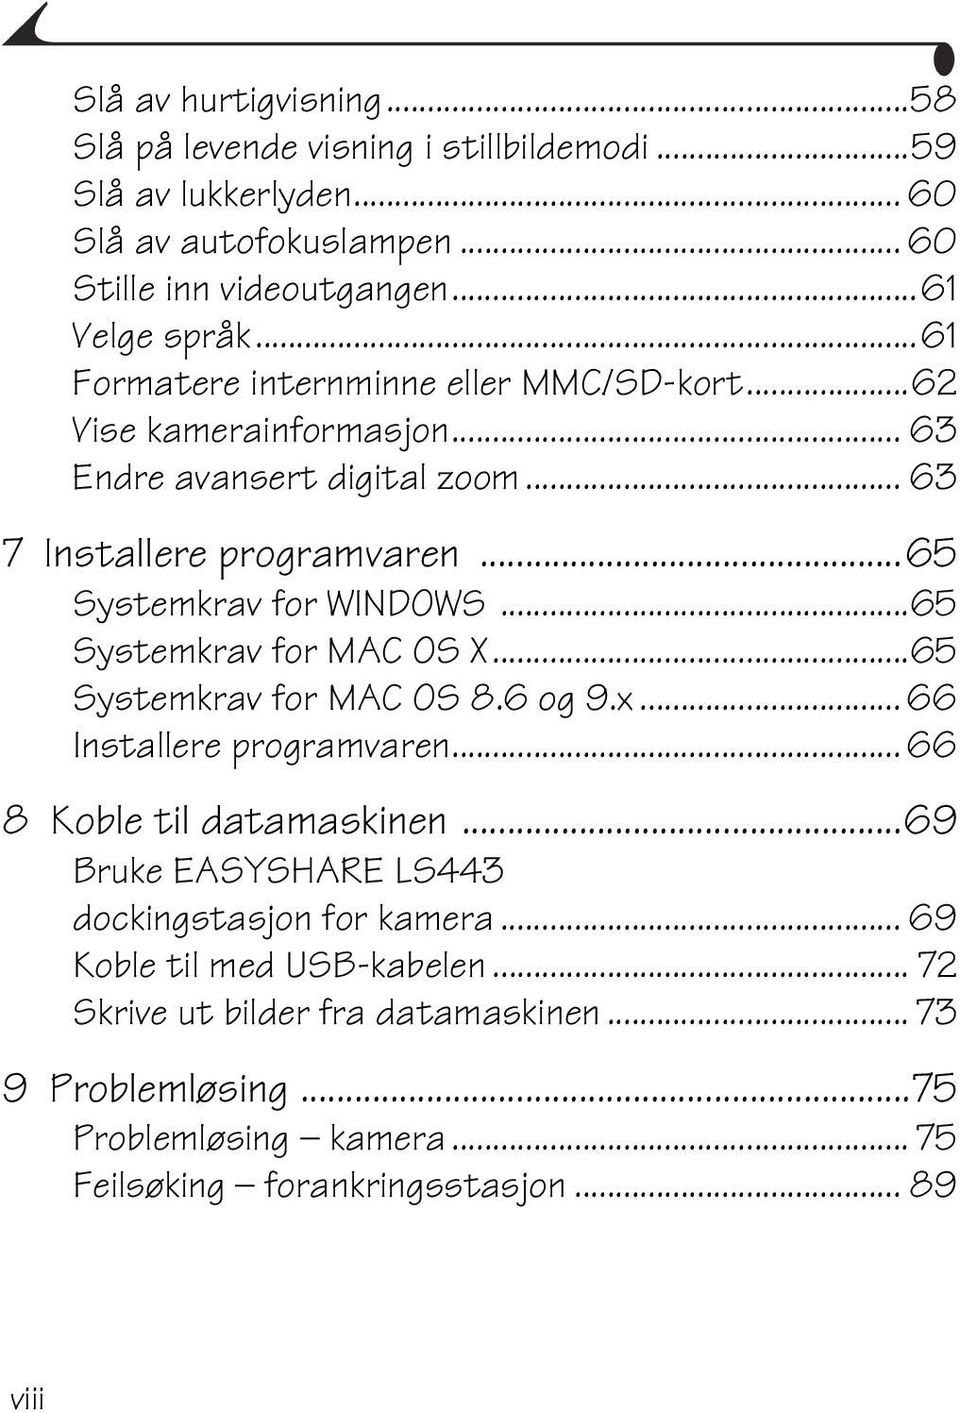 ..65 Systemkrav for MAC OS X...65 Systemkrav for MAC OS 8.6 og 9.x... 66 Installere programvaren... 66 8 Koble til datamaskinen.